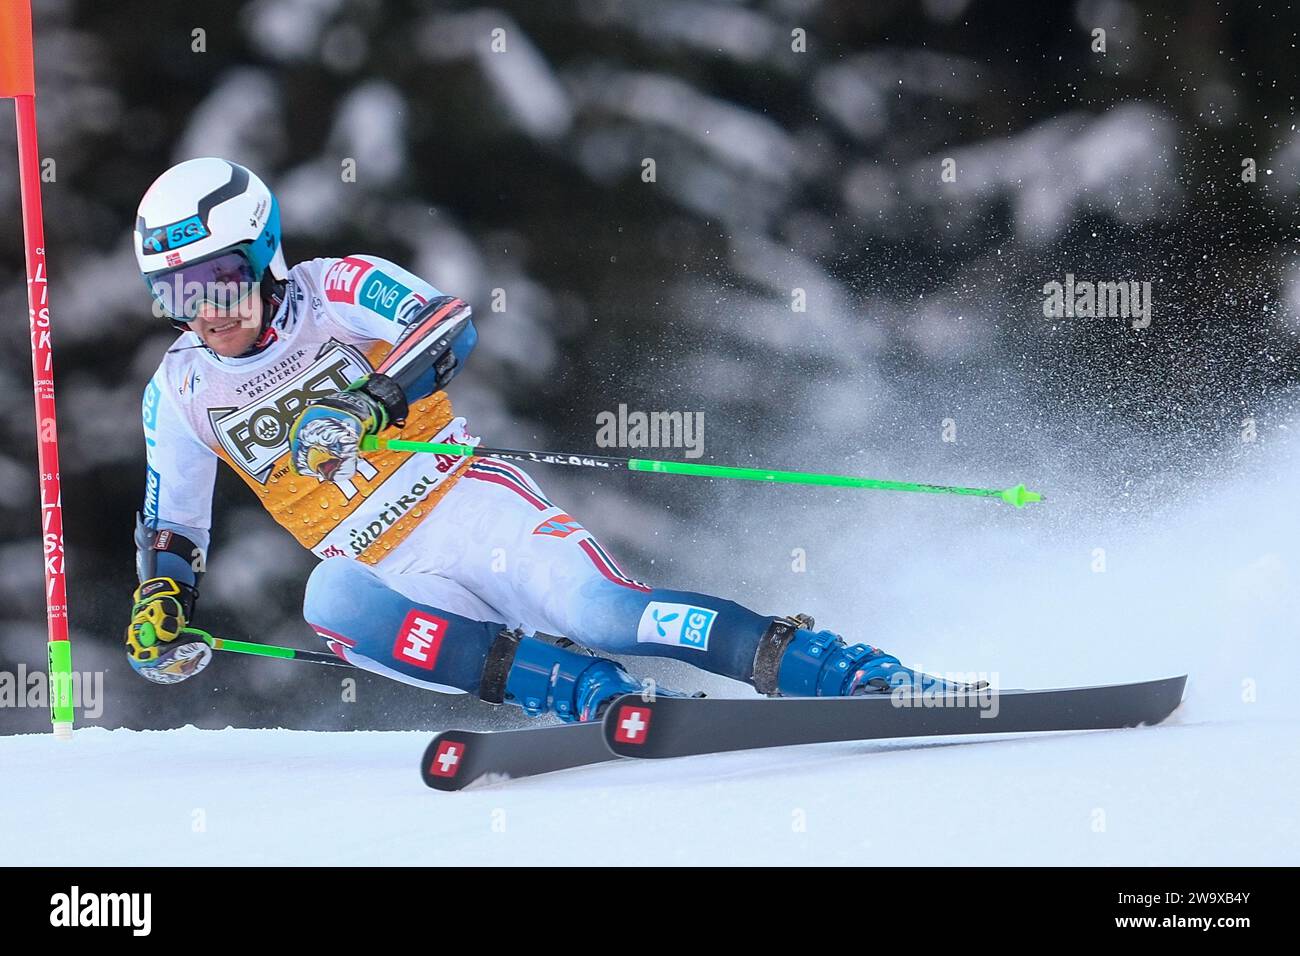 Rasmussen Windingstad (NOR) gareggia durante la Coppa del mondo di sci alpino Audi FIS, MenÕs Giant Slalom Race sulla pista Gran Risa, alta Badia il 17 dicembre, Foto Stock